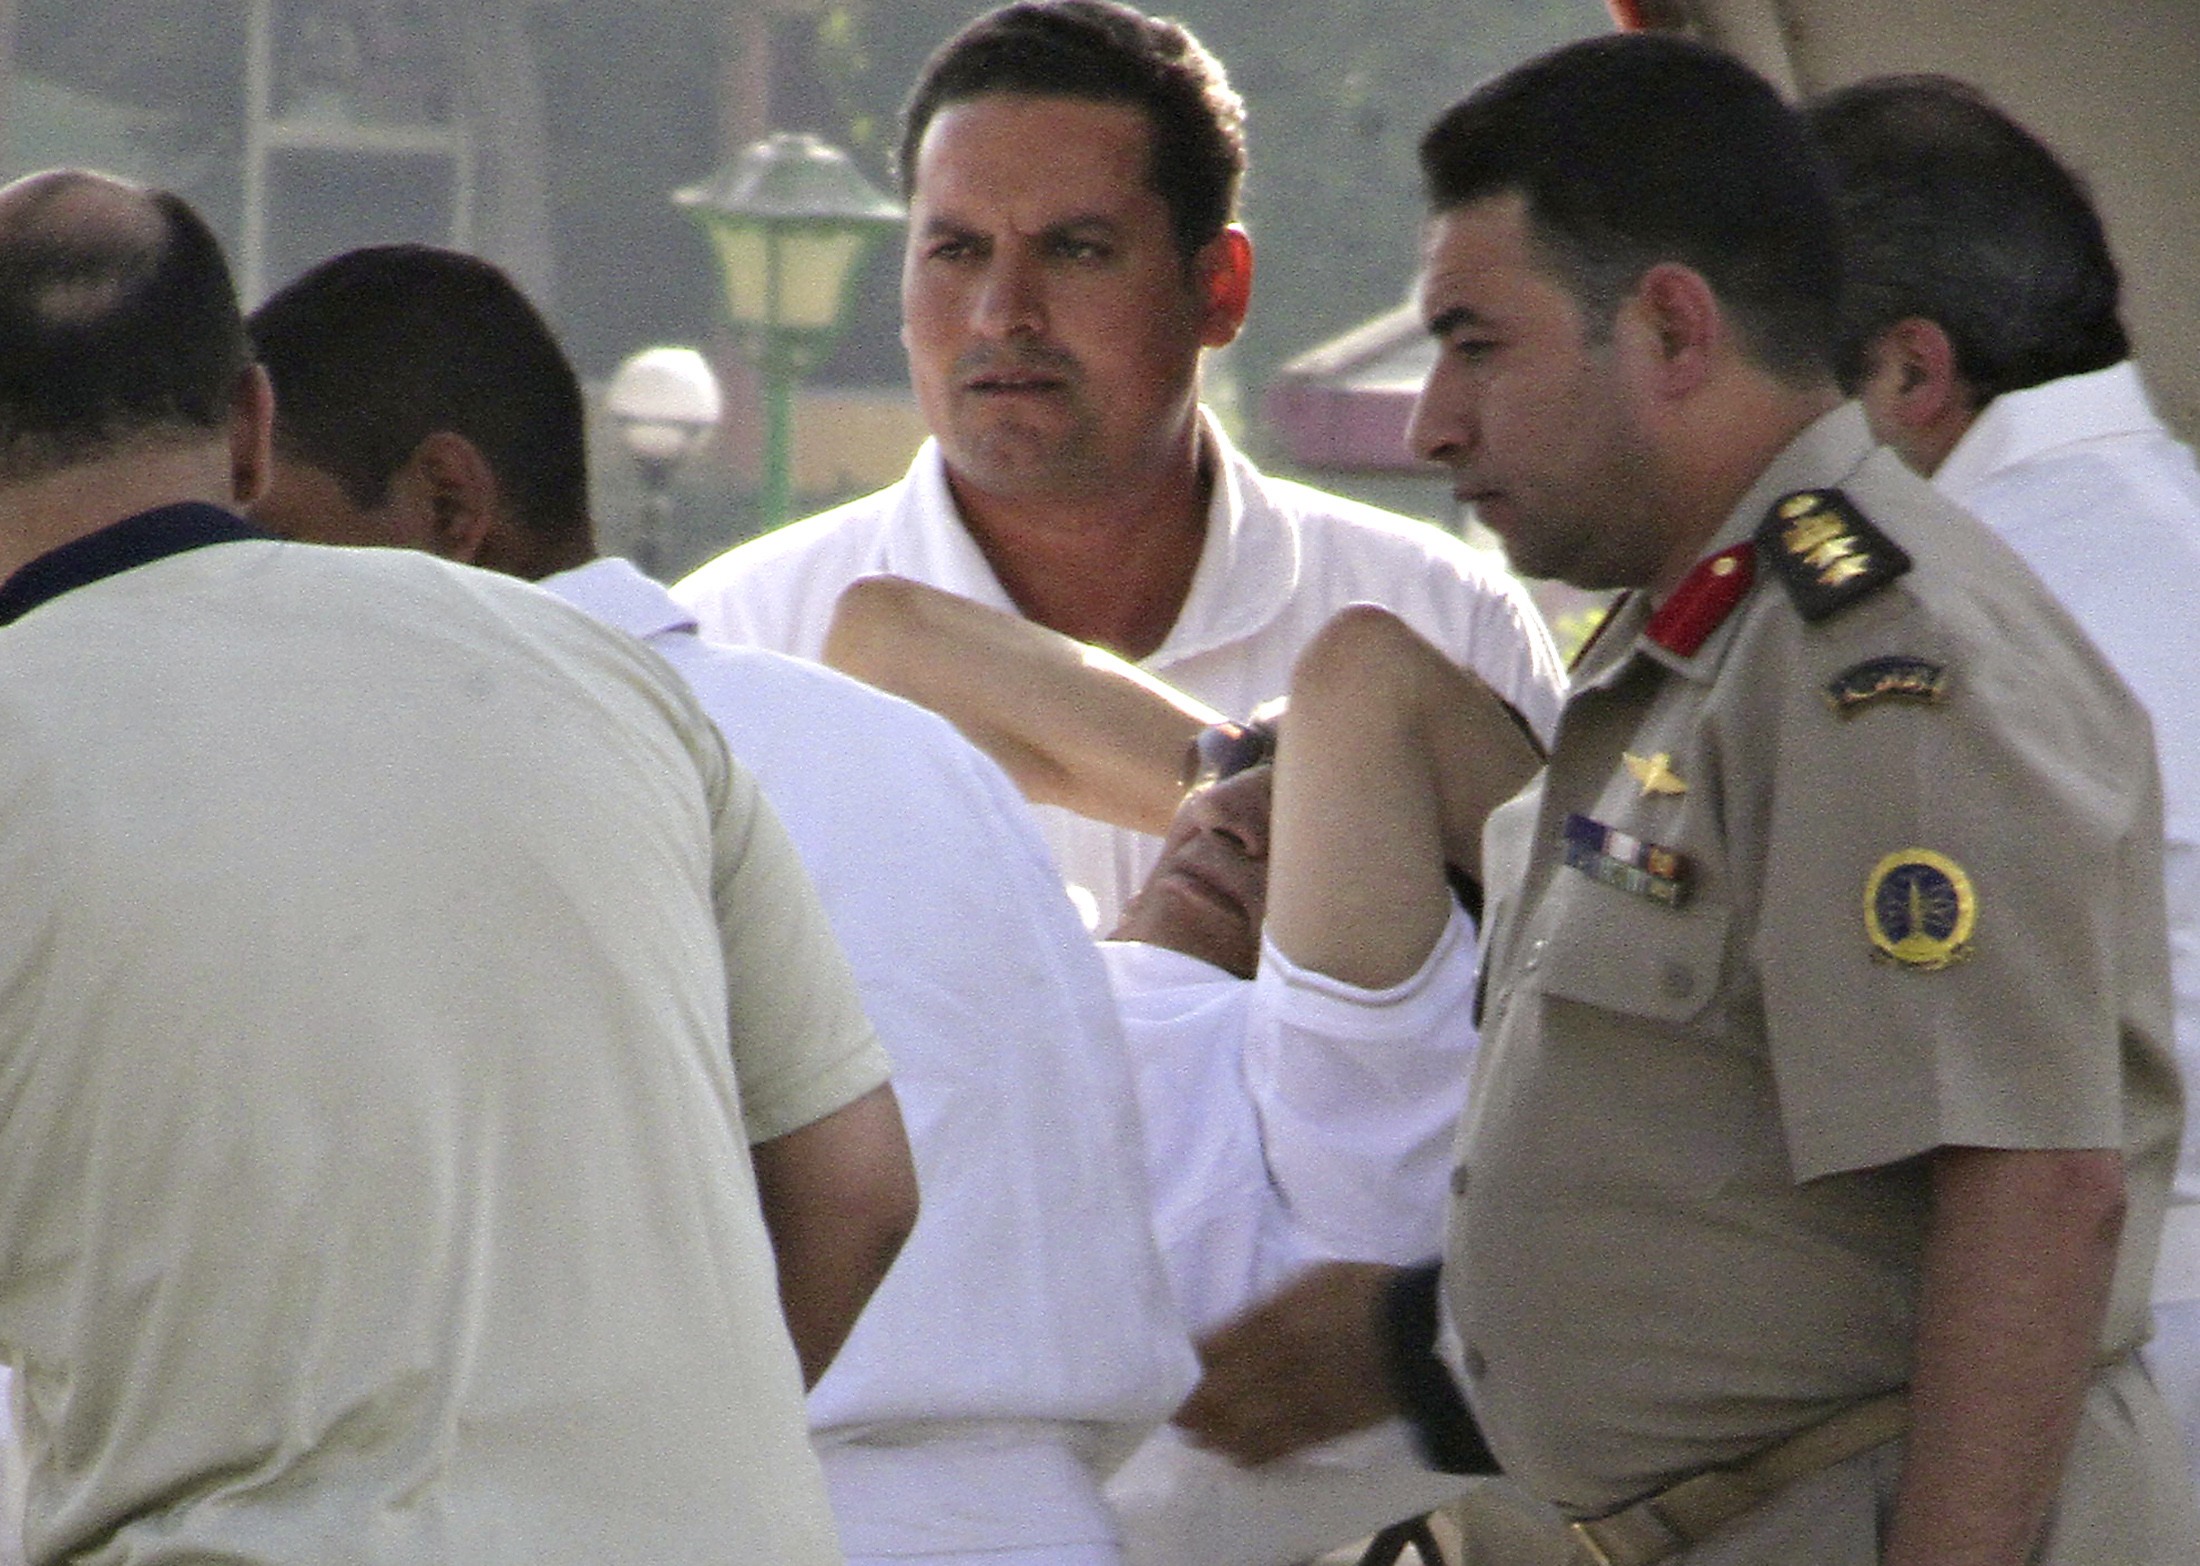 Egypt's Mubarak leaves prison for house arrest